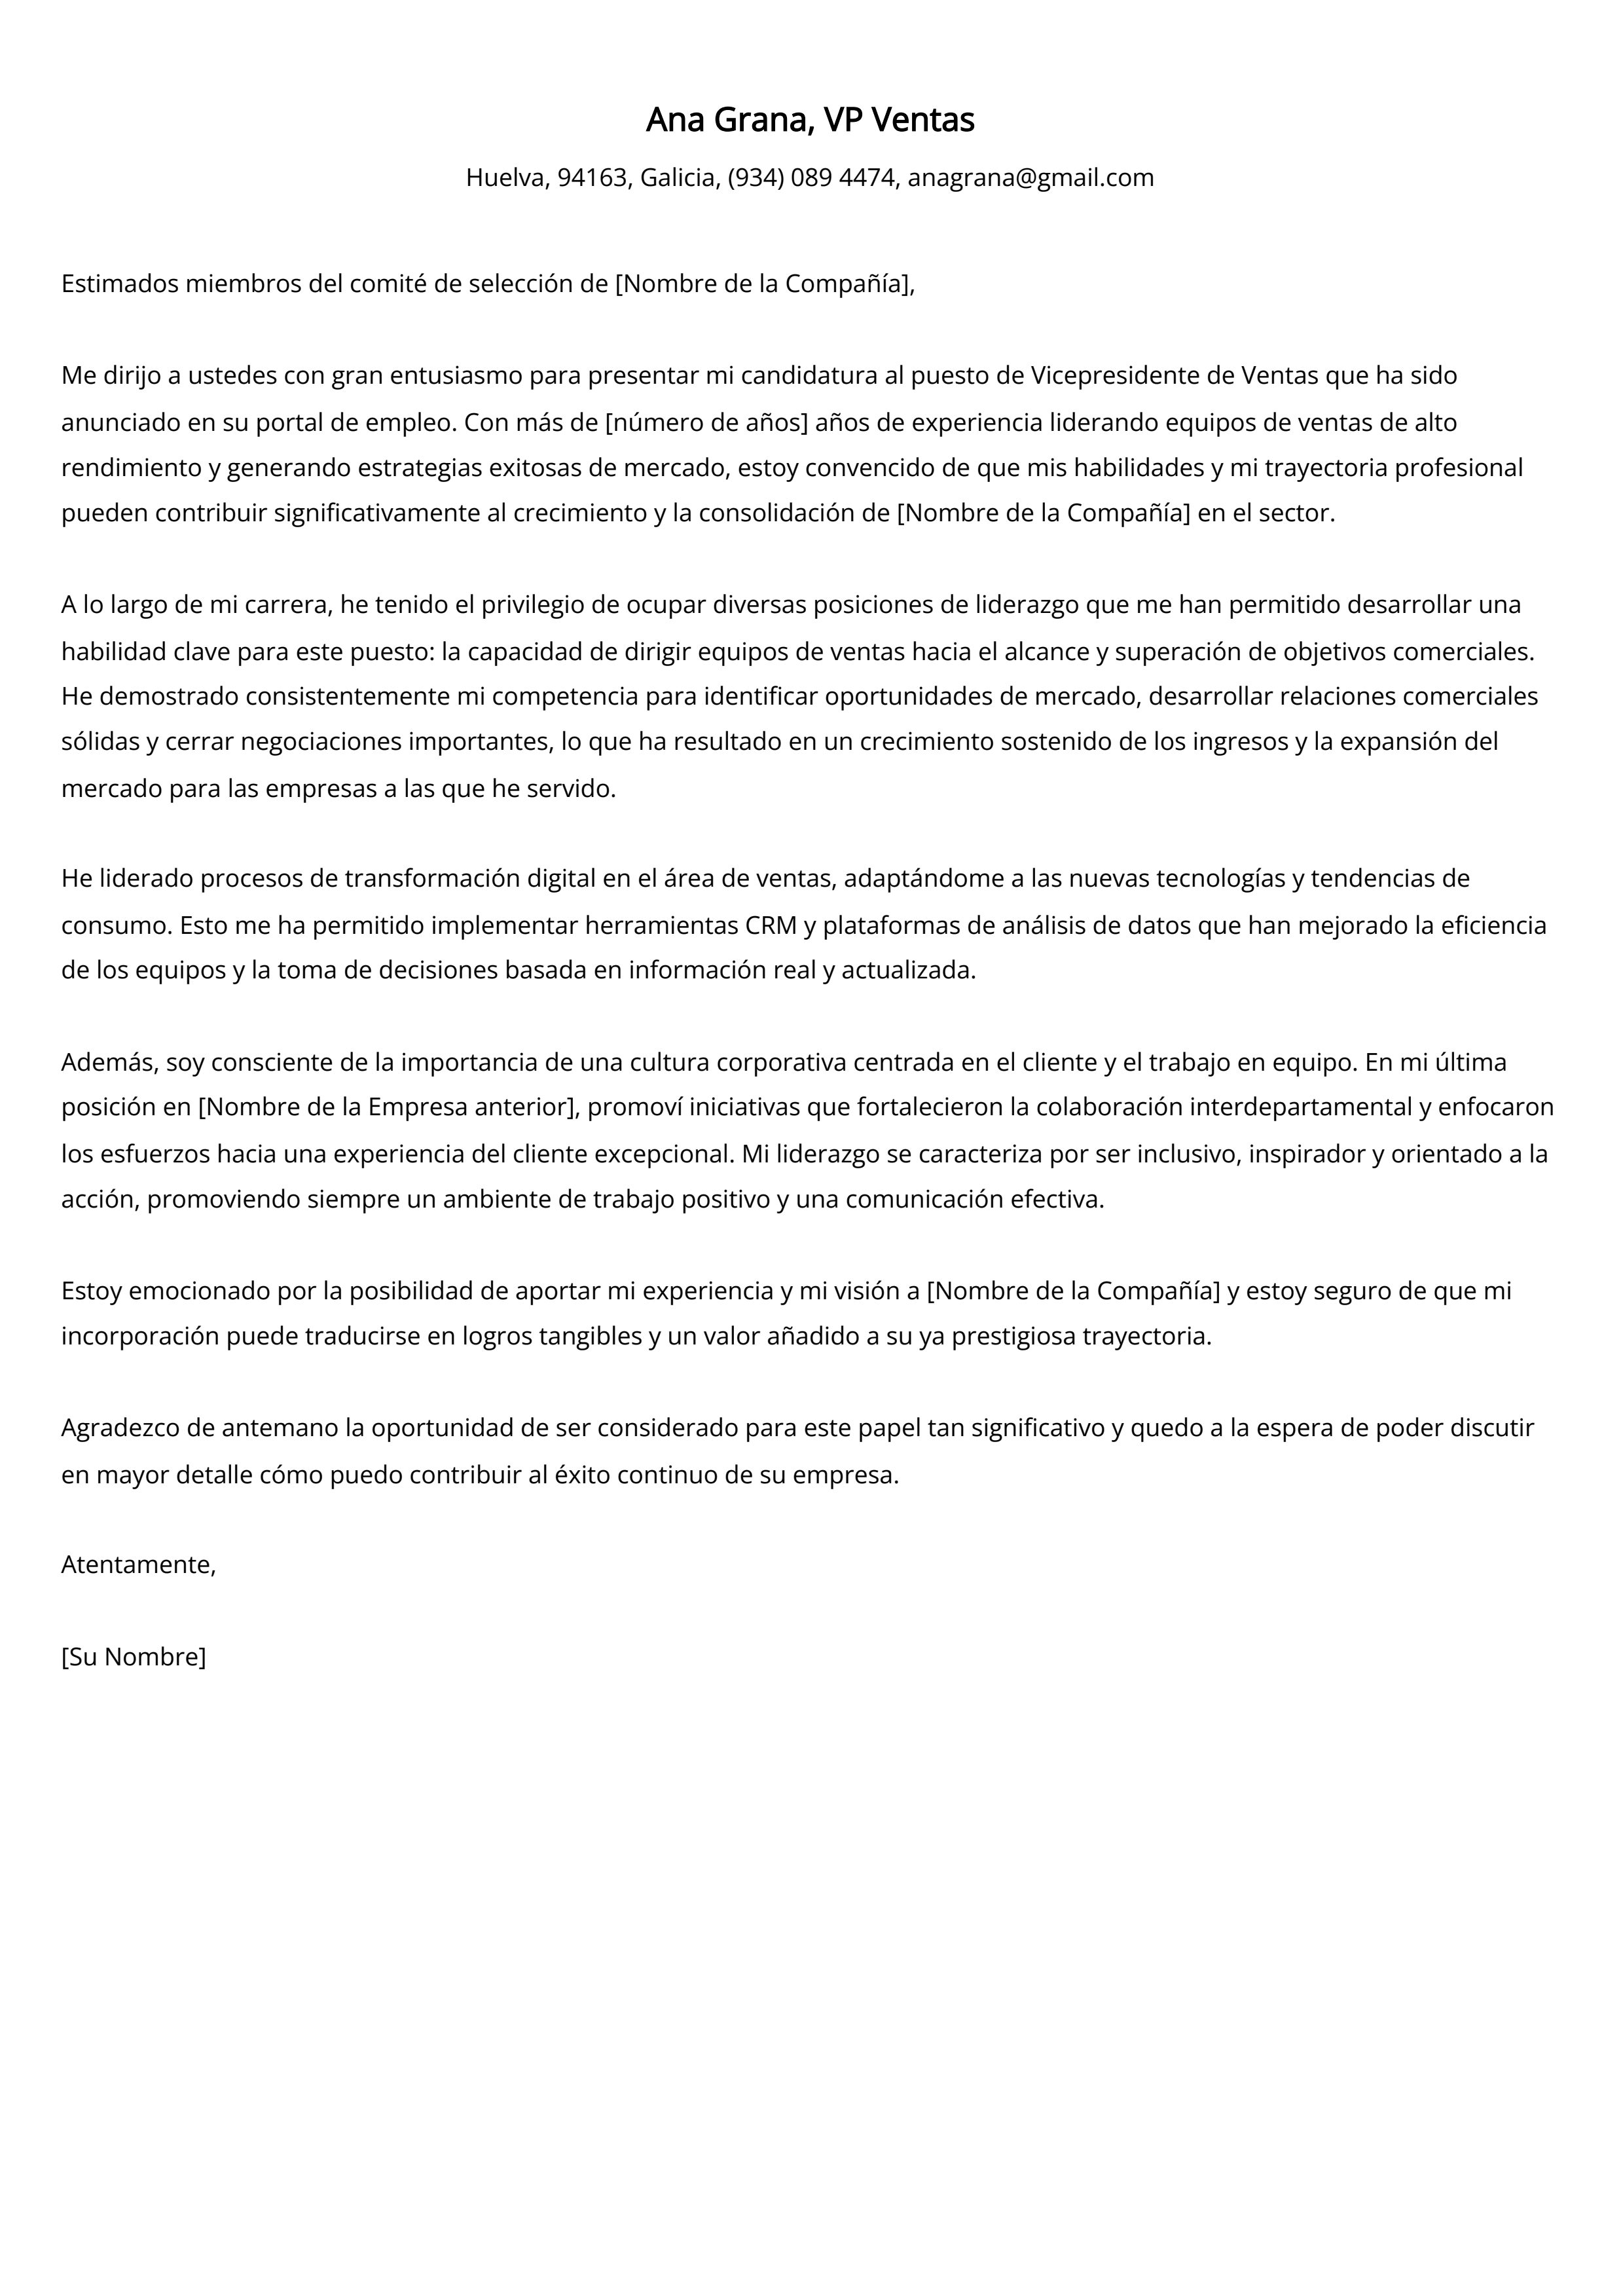 Ejemplo de carta de presentación de VP Ventas